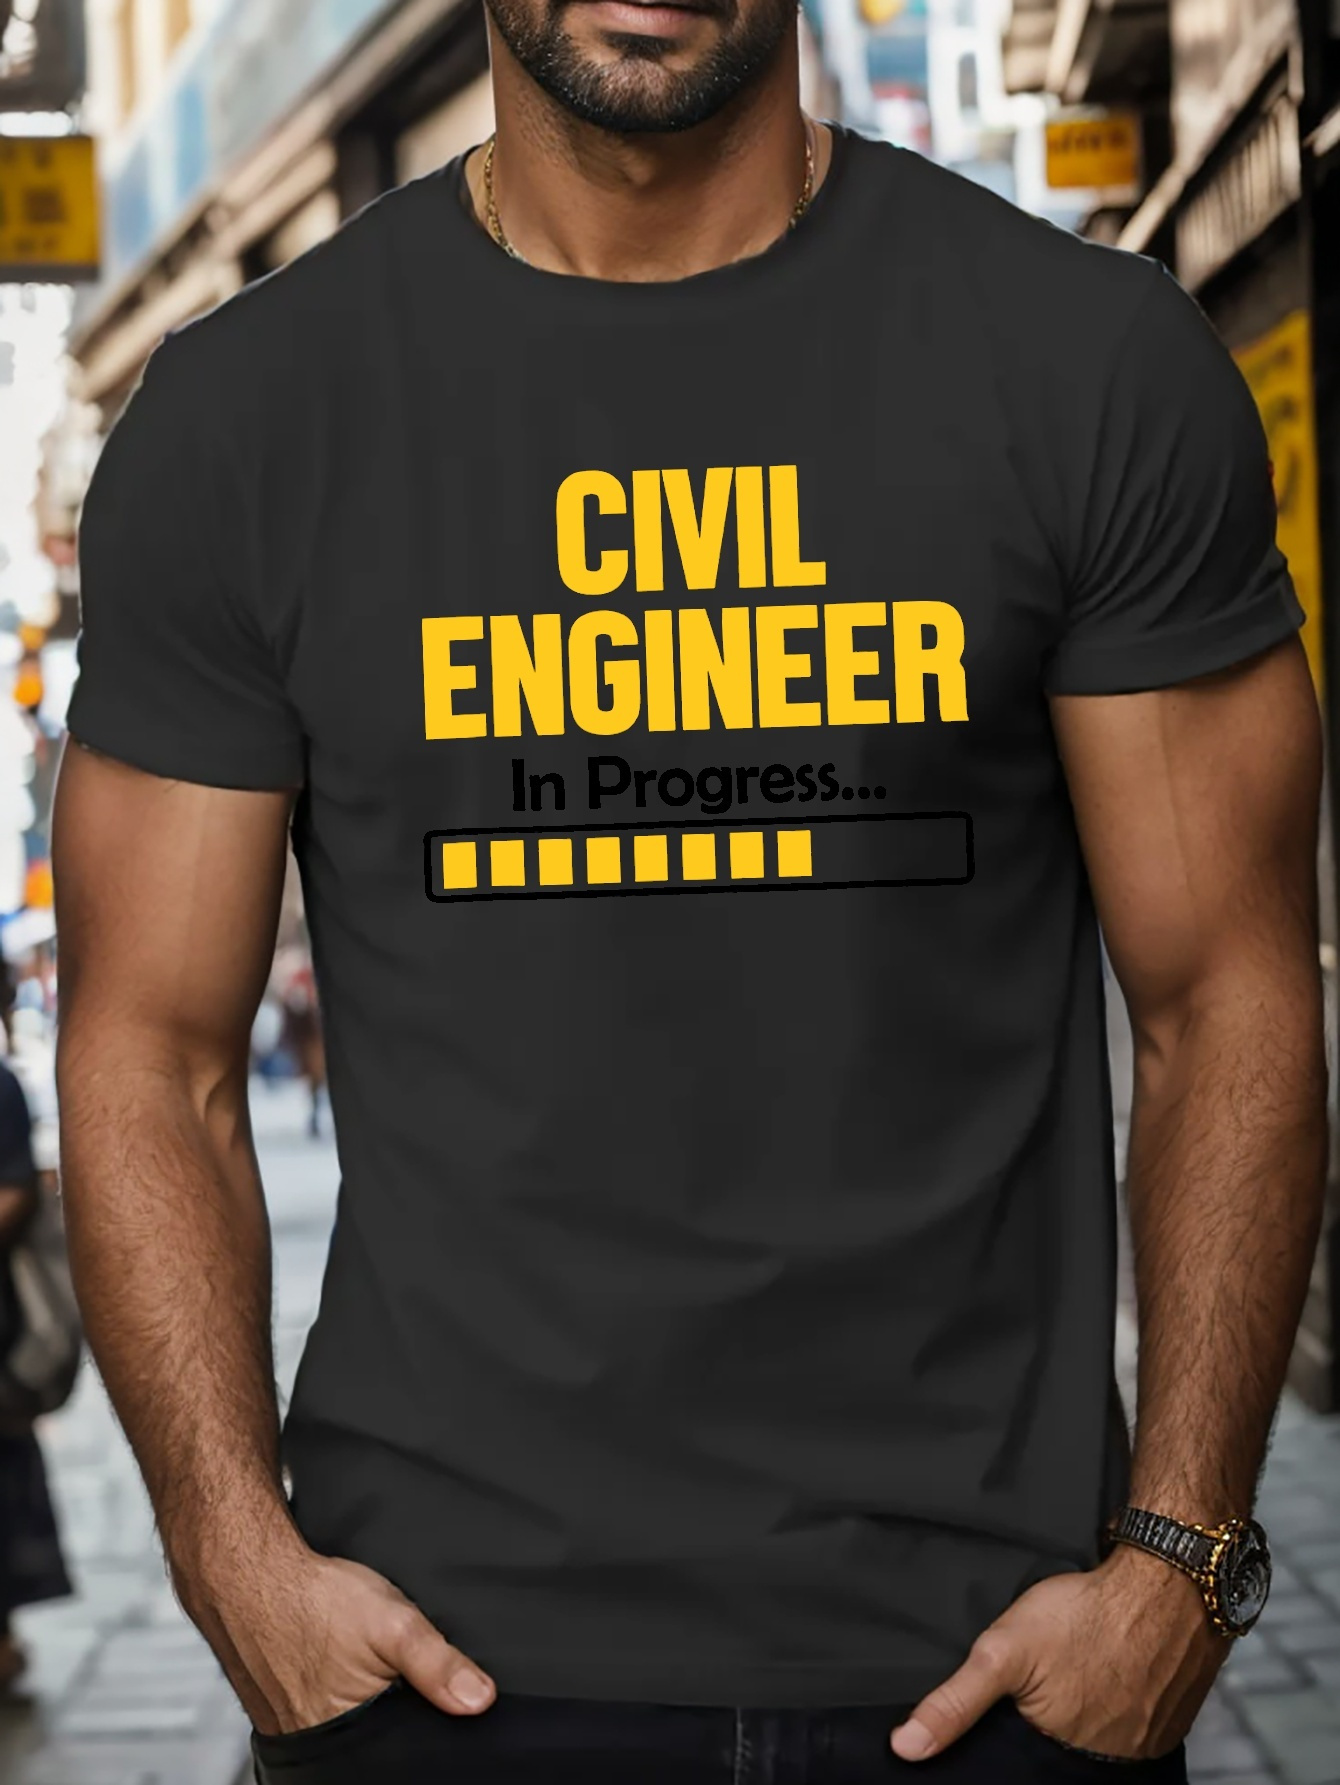 Camiseta Hombre manga larga cuello redondo 803-19-18 - Almacen del Ingeniero